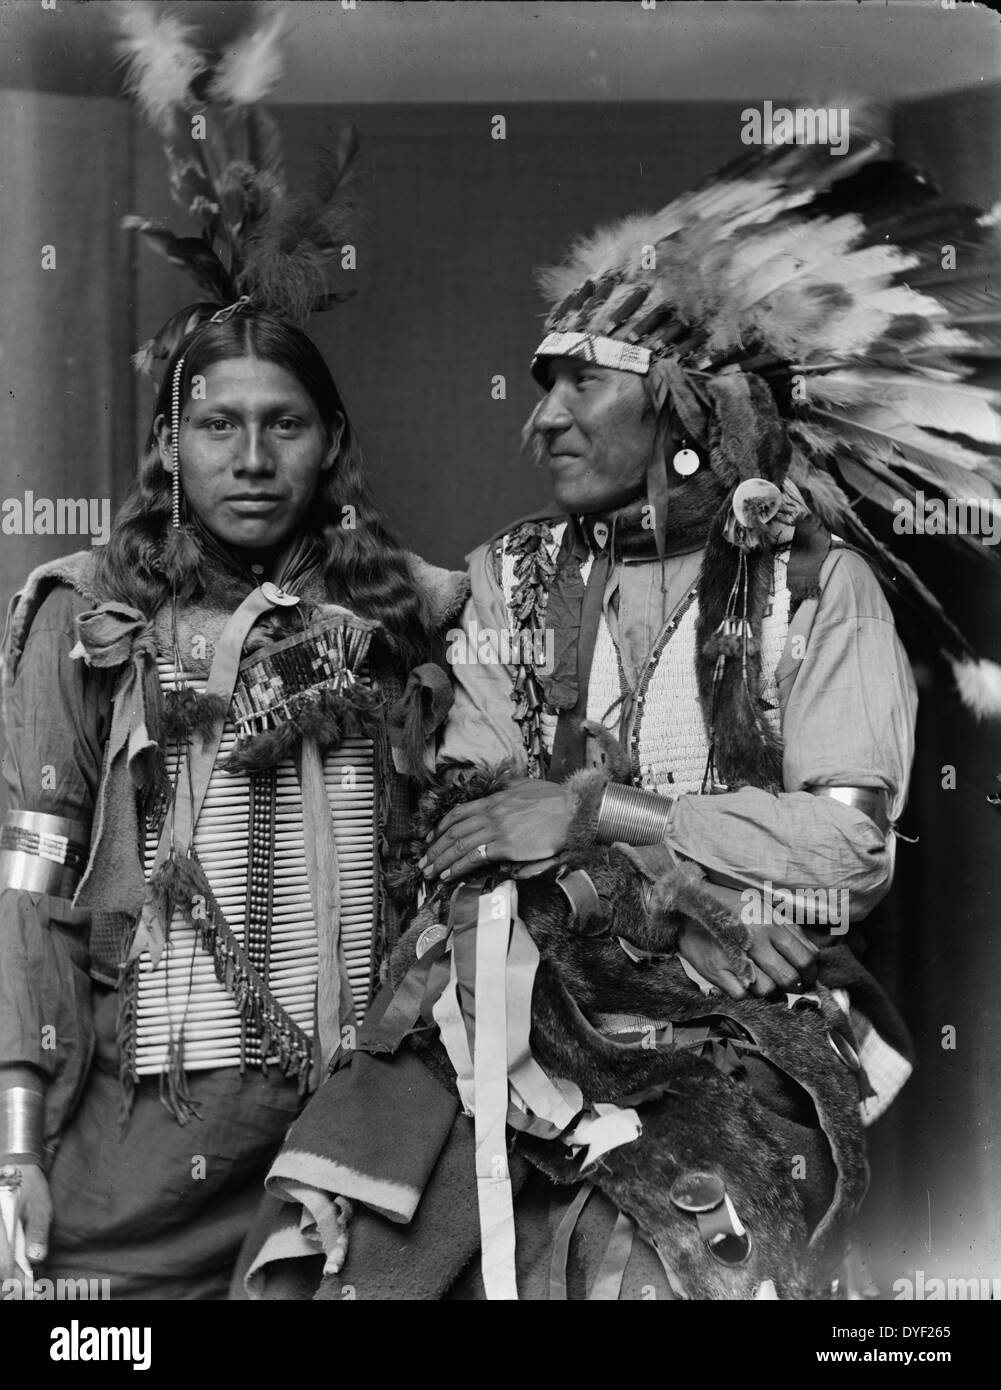 Les Indiens américains par le photographe Gertrude Käsebier, 1852-1934. Grenouille sainte (à gauche) et Big Navet étaient probablement membres du Buffalo Bill's Wild West Show, half-length portrait, l'un portant une coiffe. En date du ca. 1900 Banque D'Images